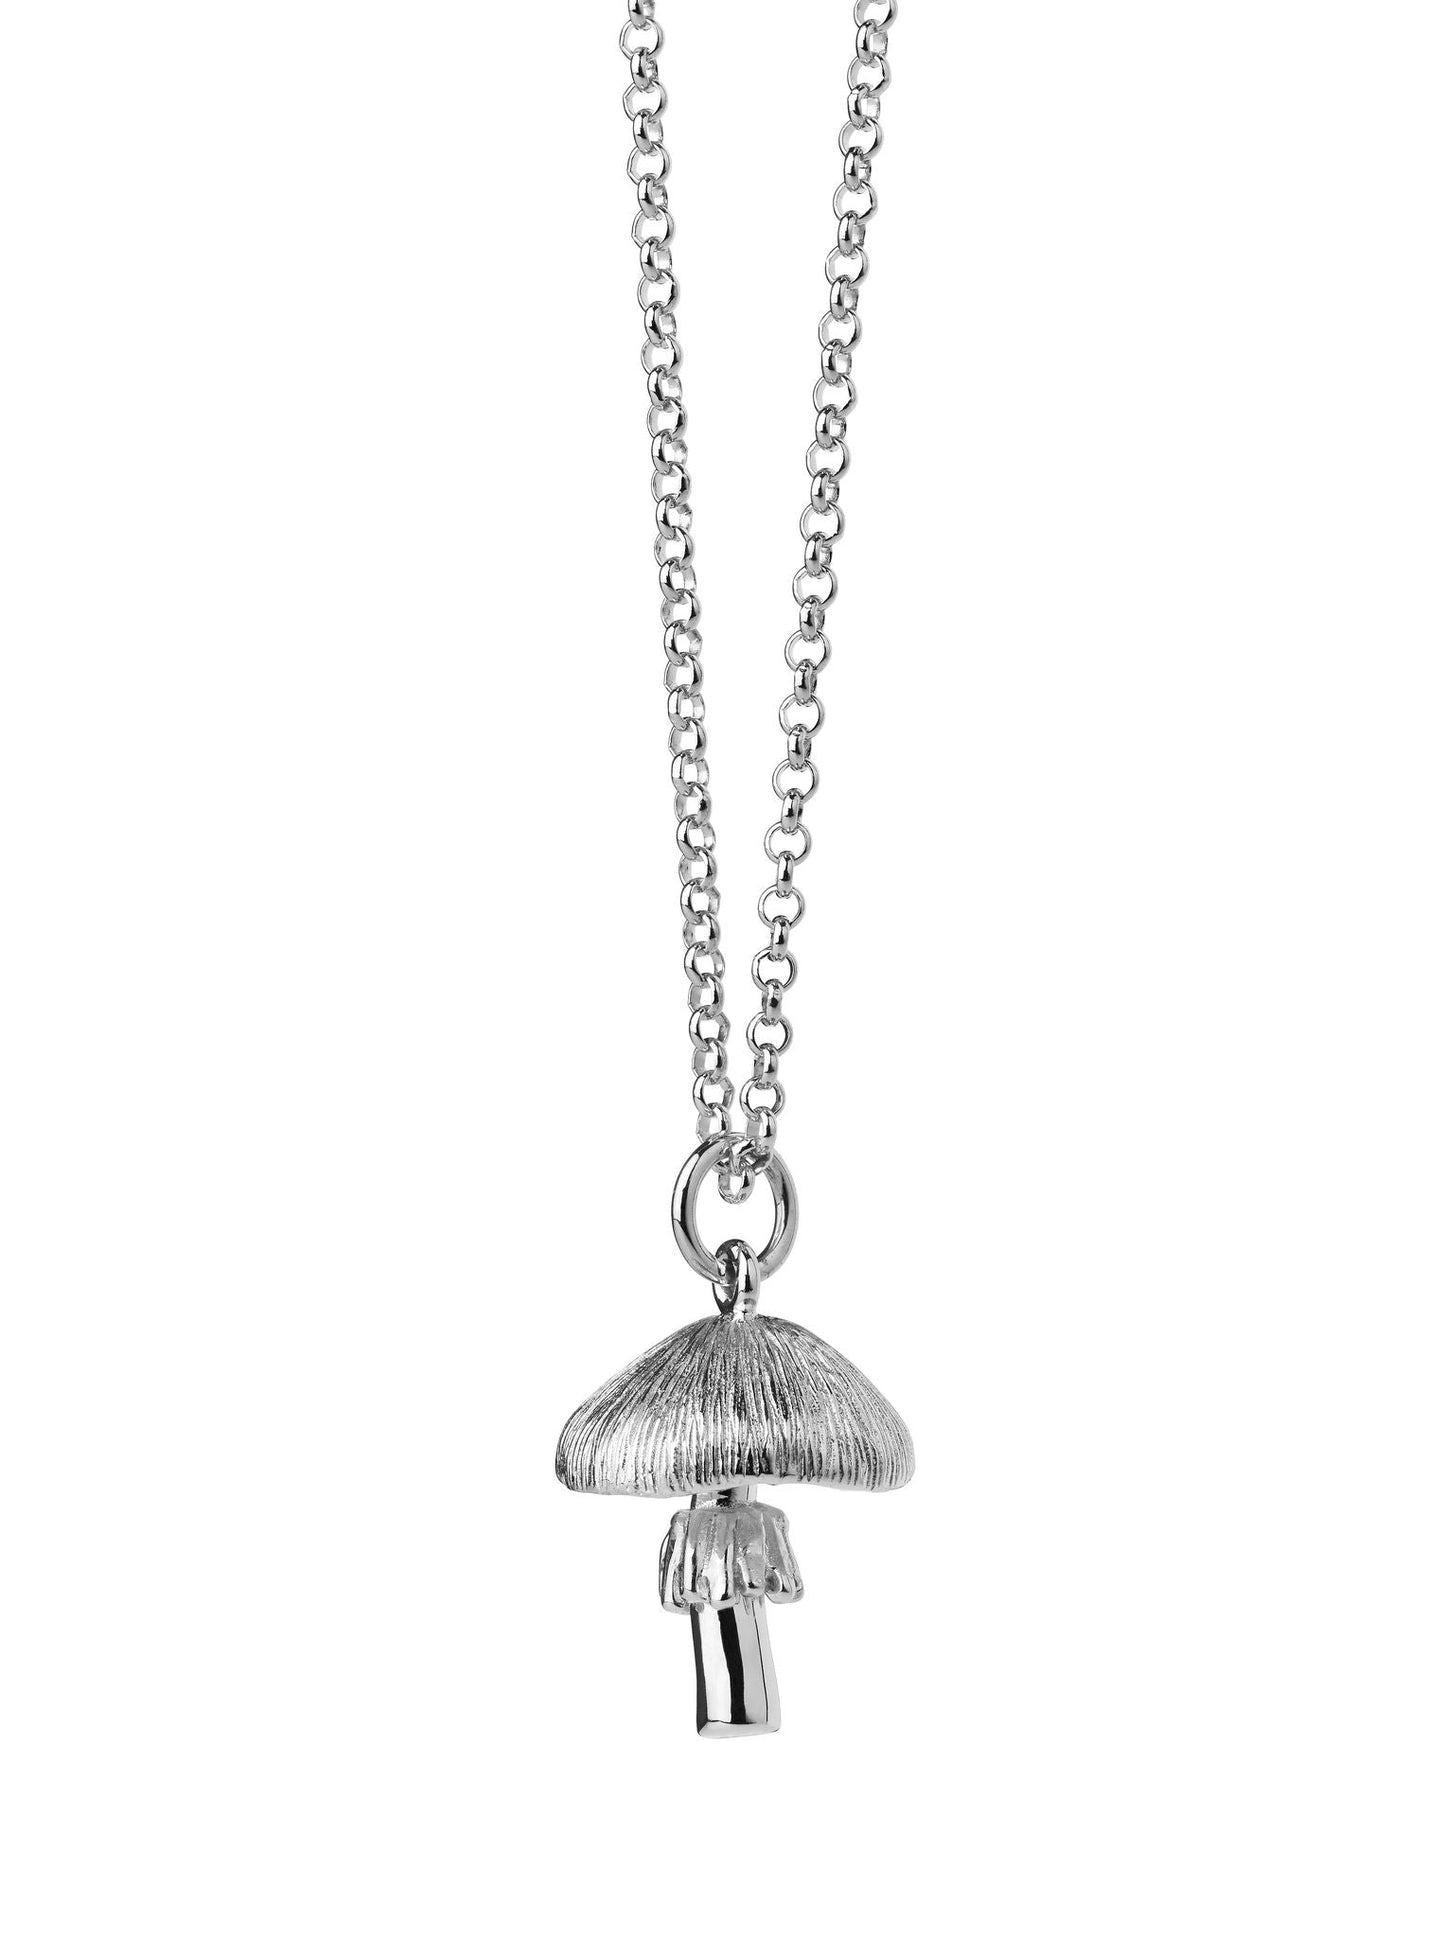 Karen Walker Jewellery | Mushroom Necklace | Sterling | Palm Boutique